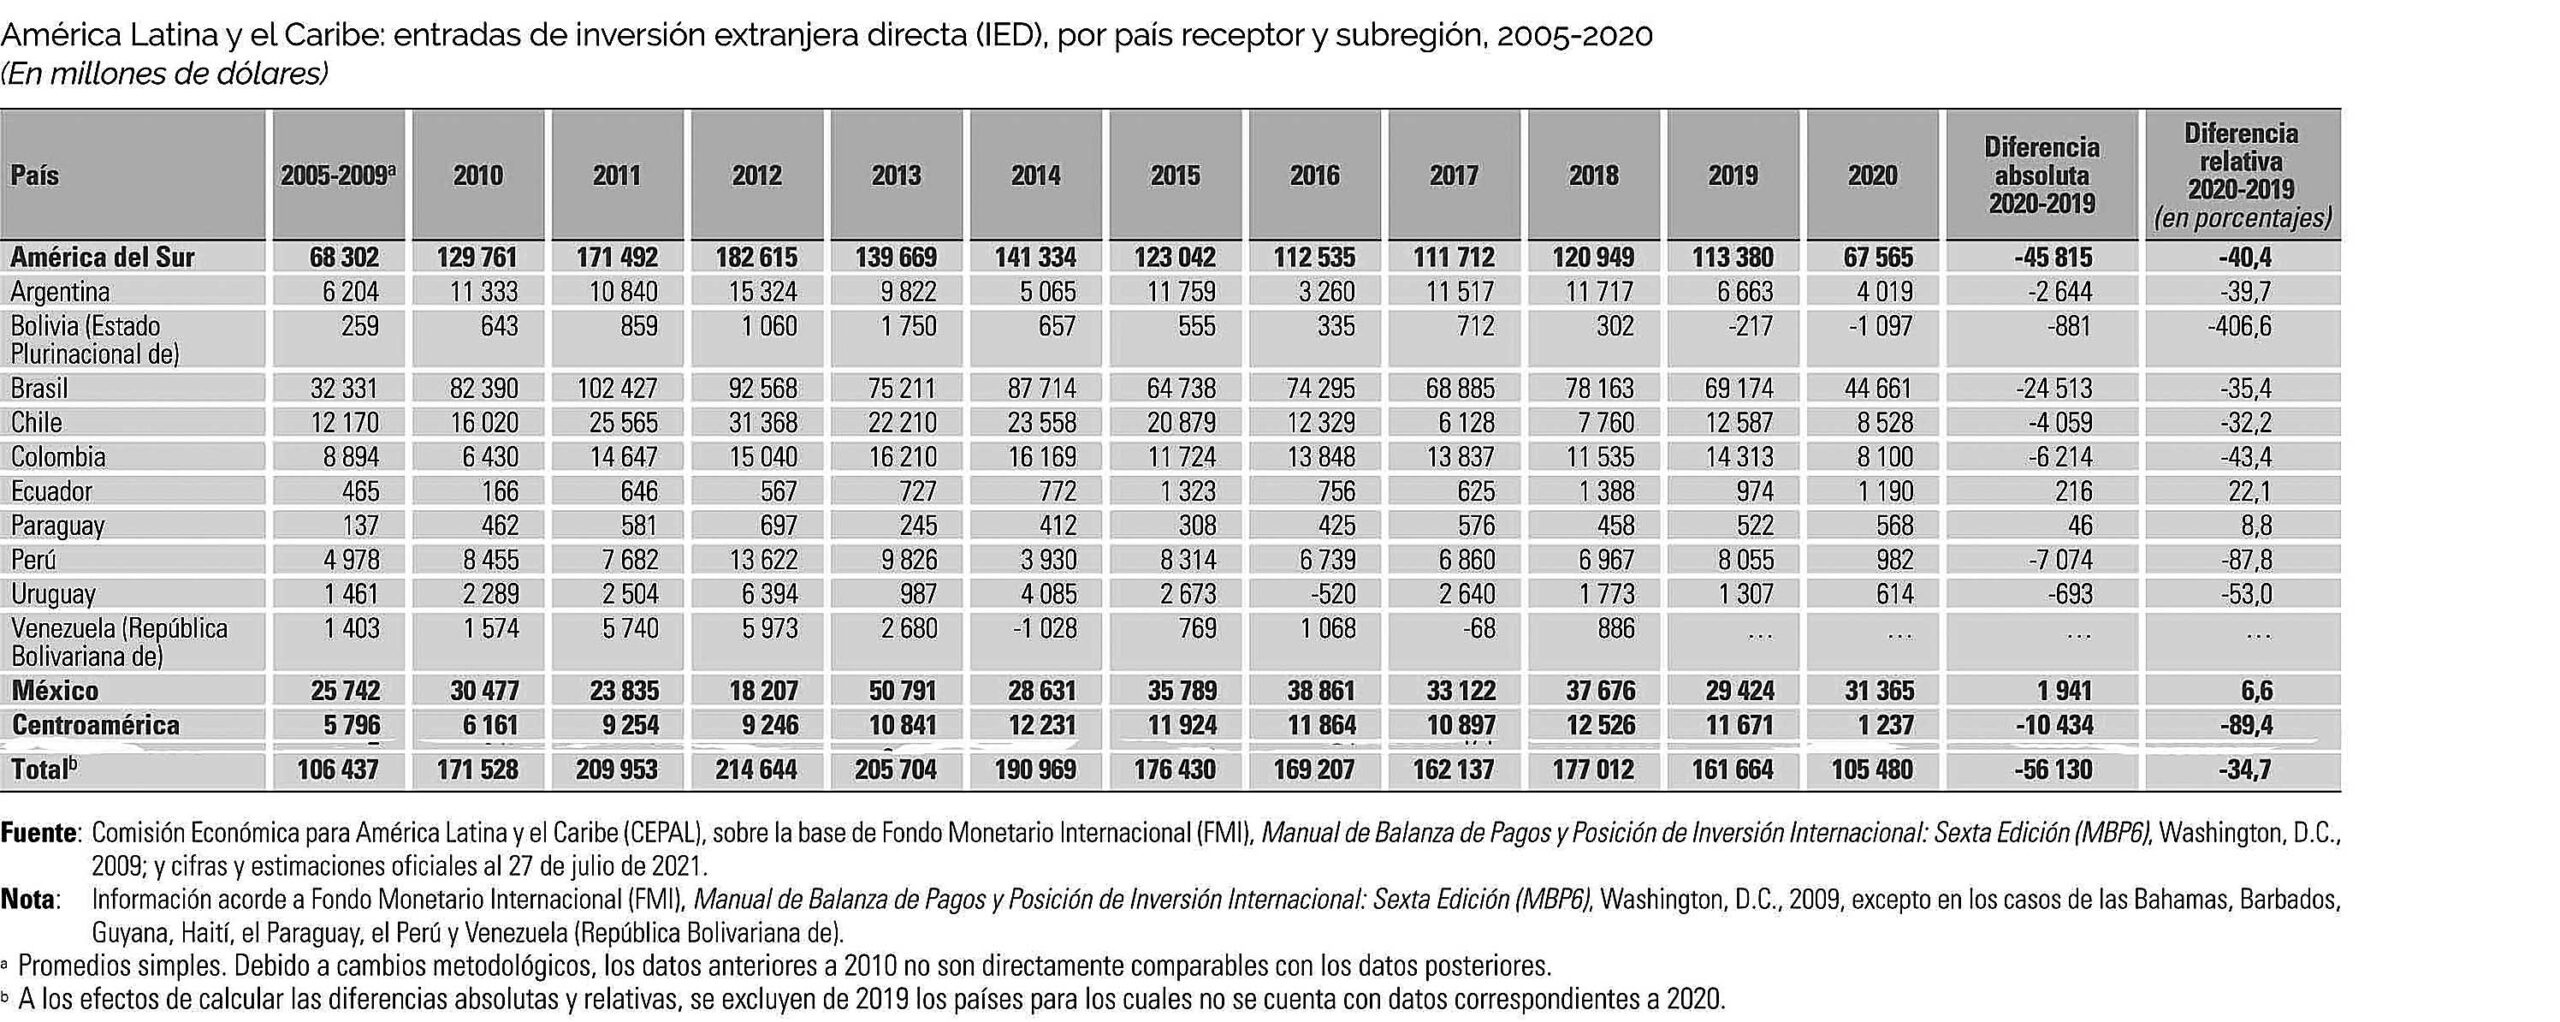 America latina y El caribe entradas de inversion extranjera directa por pais 2005 2020